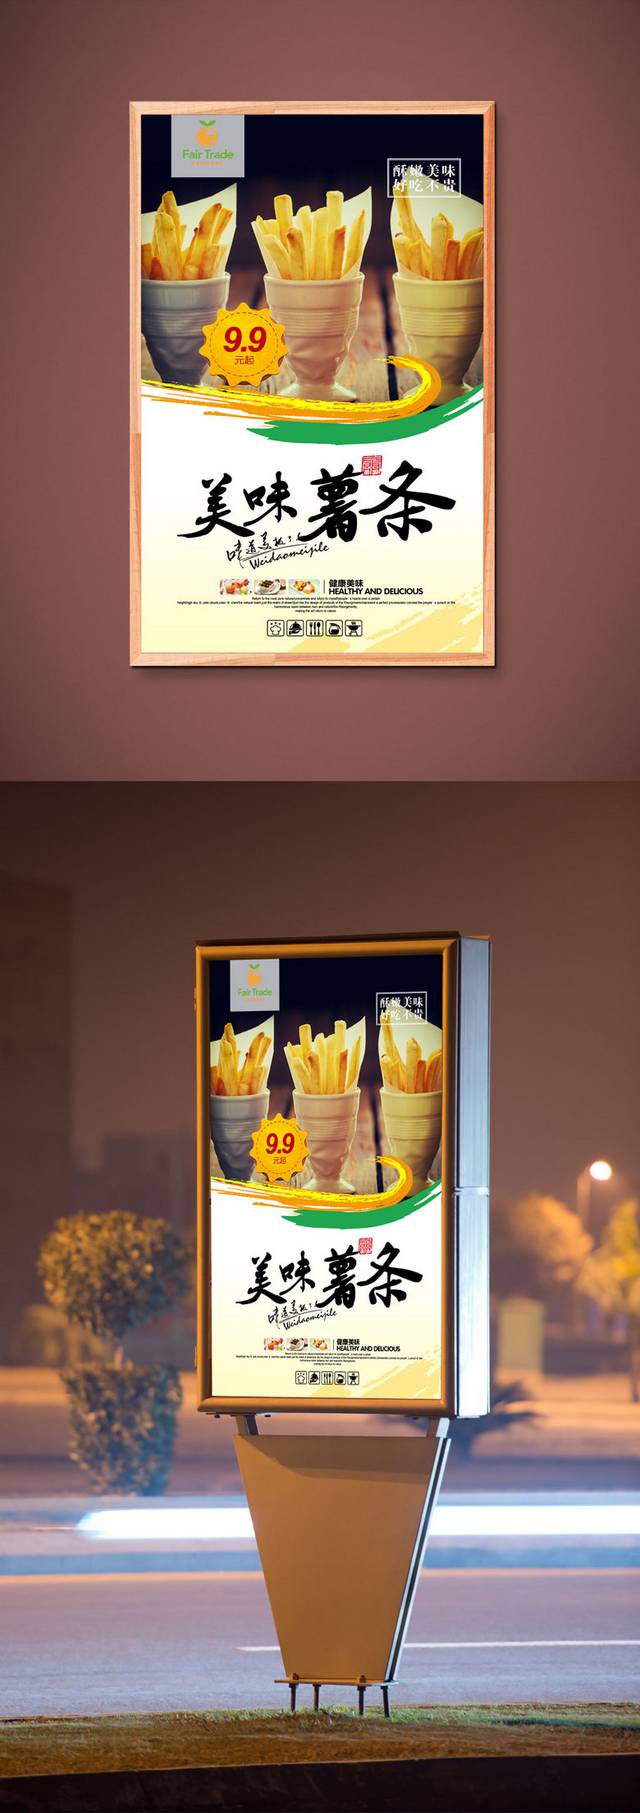 原创薯条零食海报设计